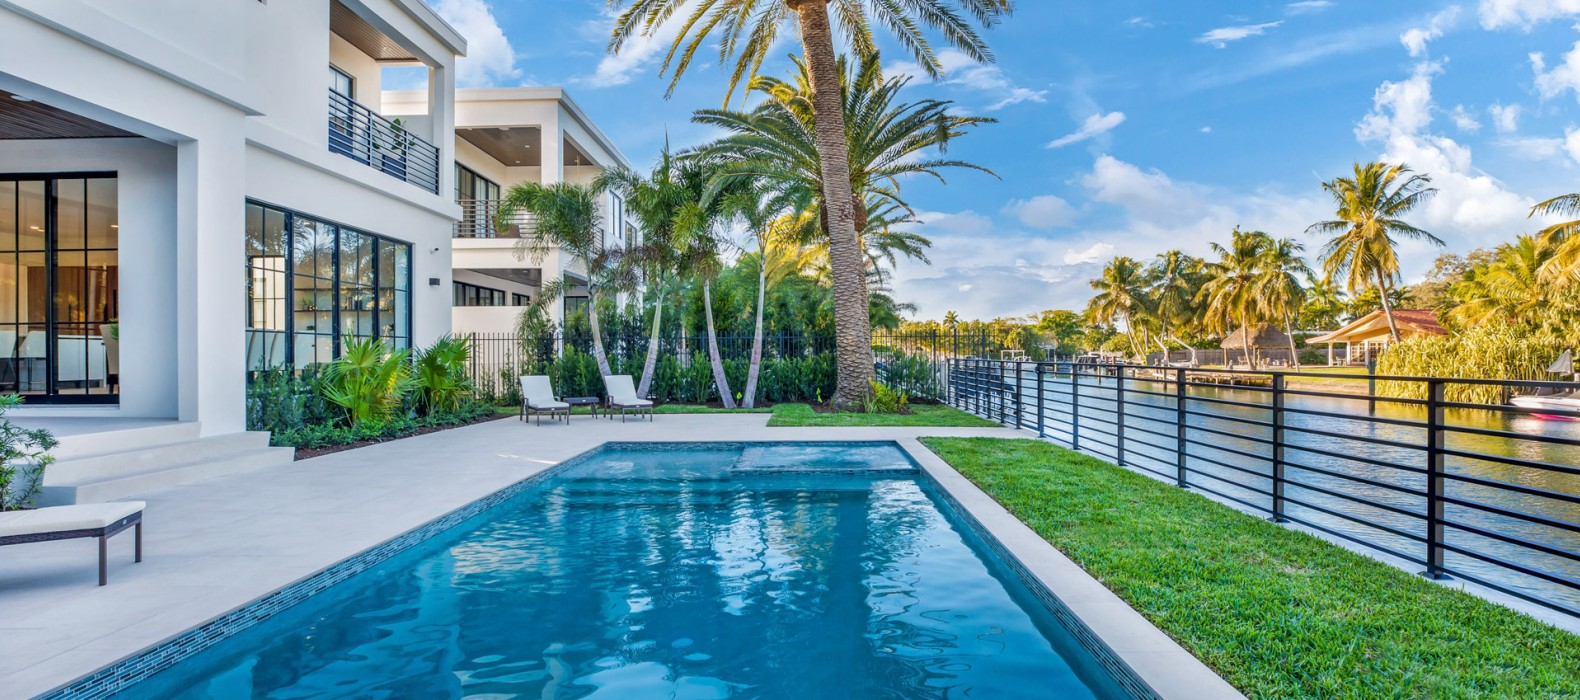 Exterior pool of Villa Button in Miami